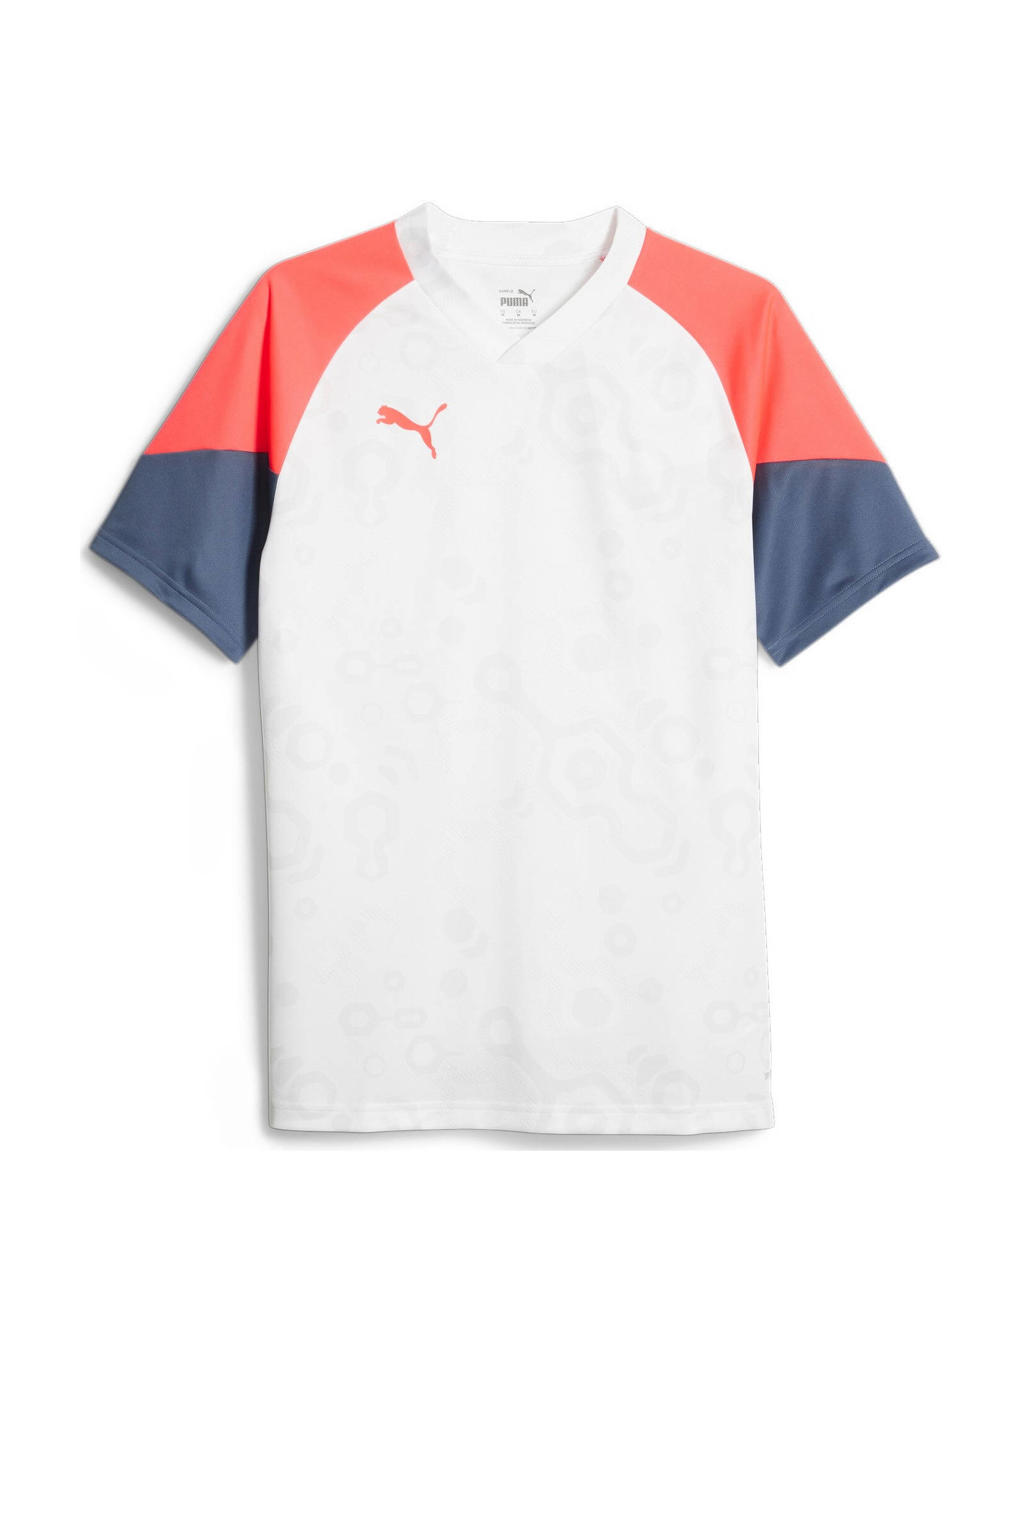 Wit, rood en donkerblauwe heren Puma voetbalshirt van polyester met meerkleurige print, korte mouwen en V-hals